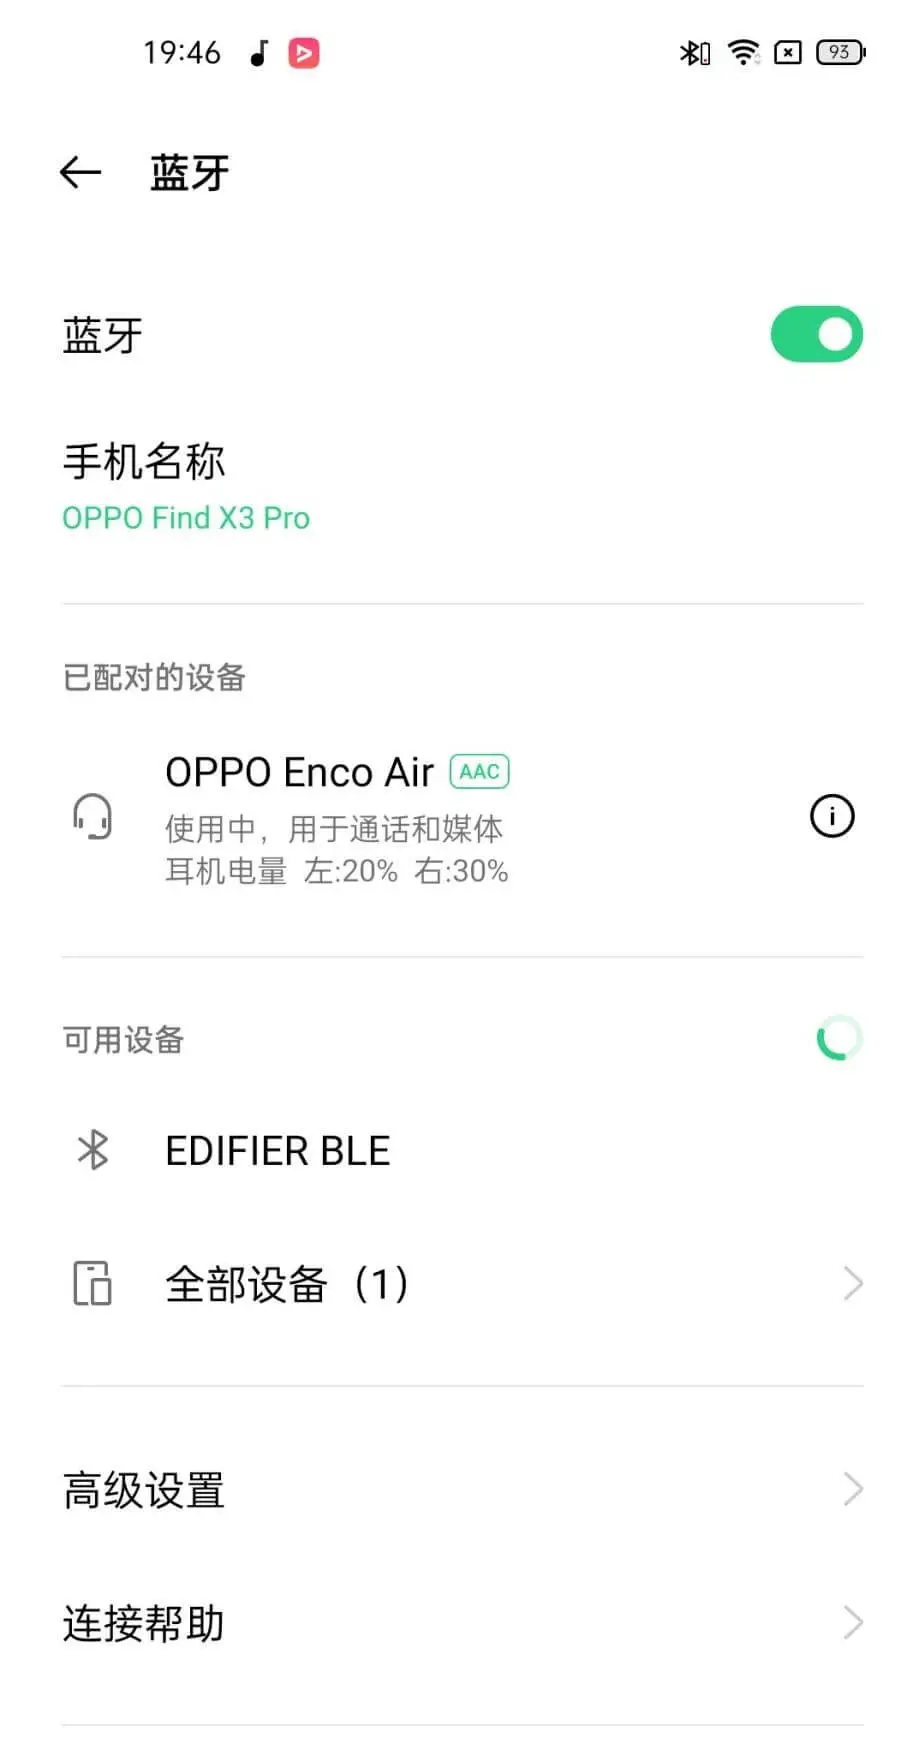 OPPO Enco Air